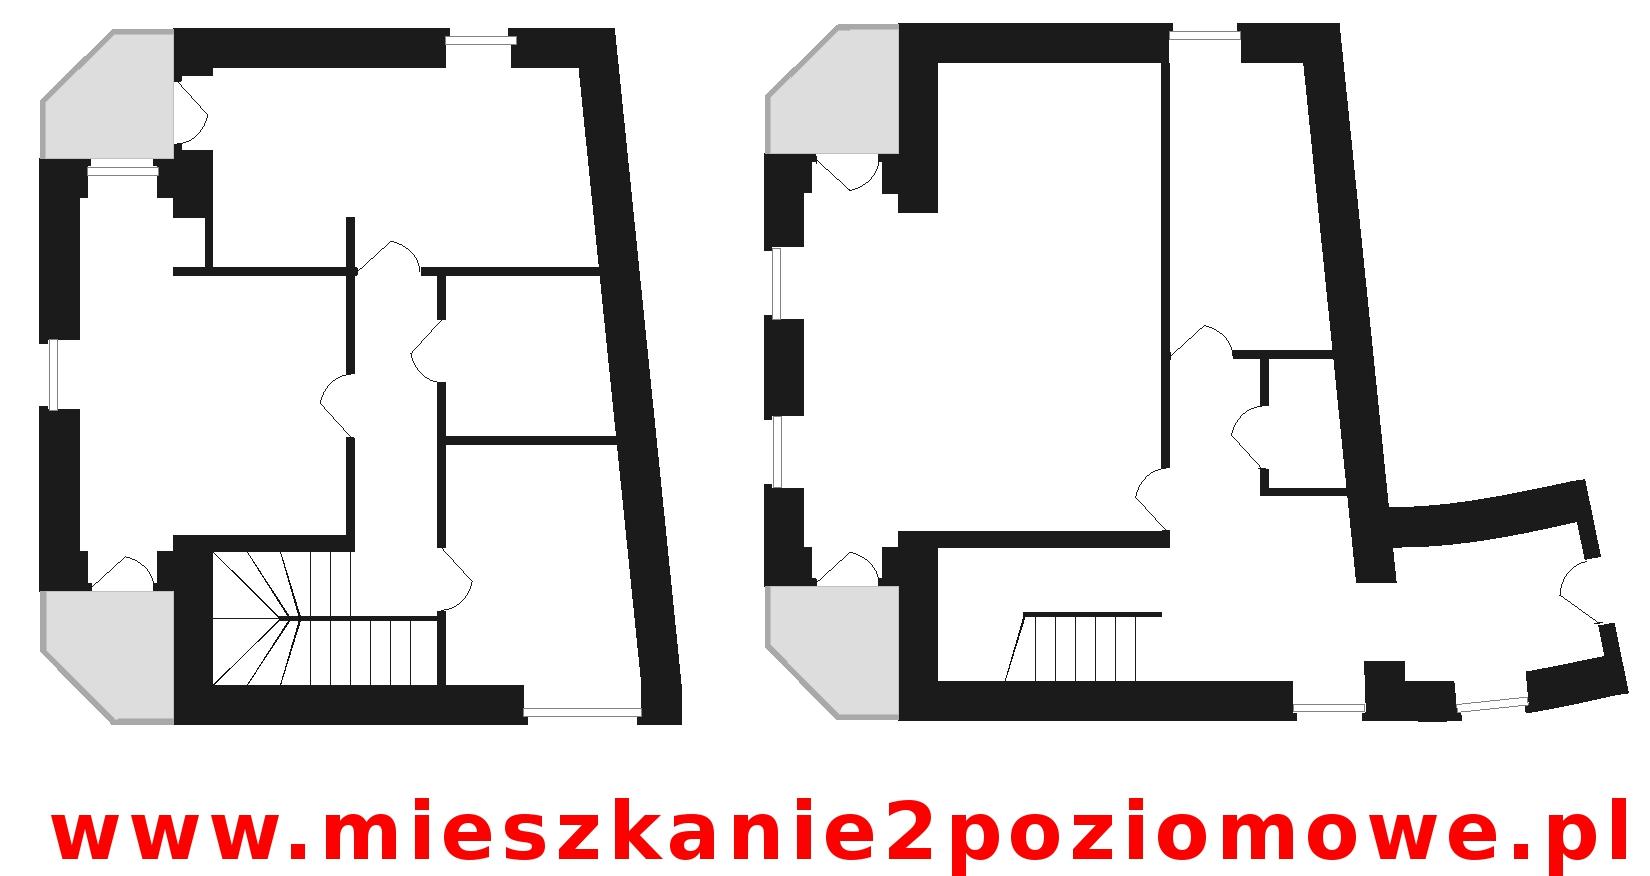 Ciekawe mieszkanie 2 poziomowe w sercu Krakowa